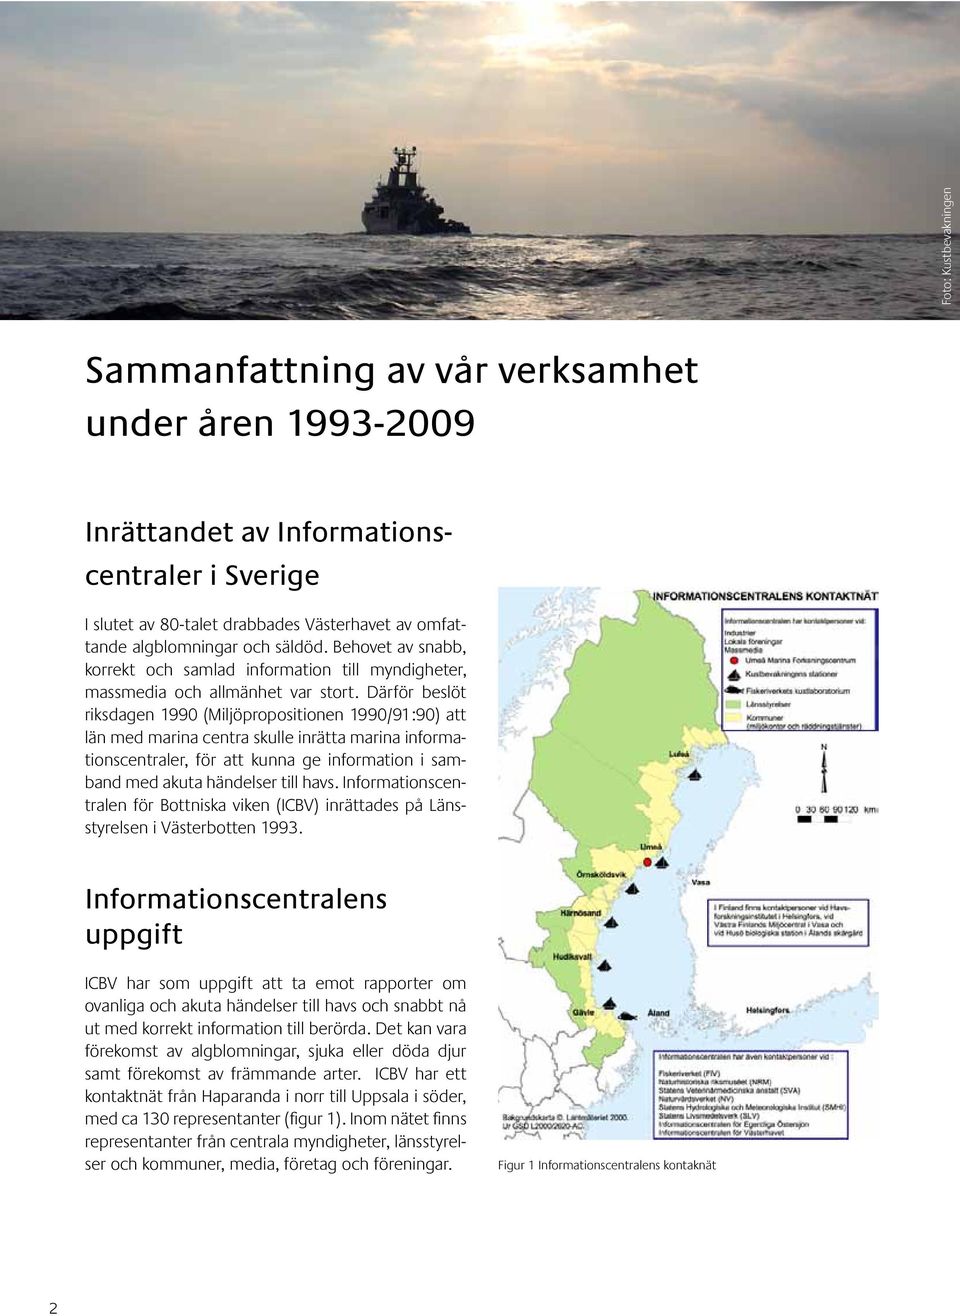 Därför beslöt riksdagen 1990 (Miljöpropositionen 1990/91:90) att län med marina centra skulle inrätta marina informationscentraler, för att kunna ge information i samband med akuta händelser till